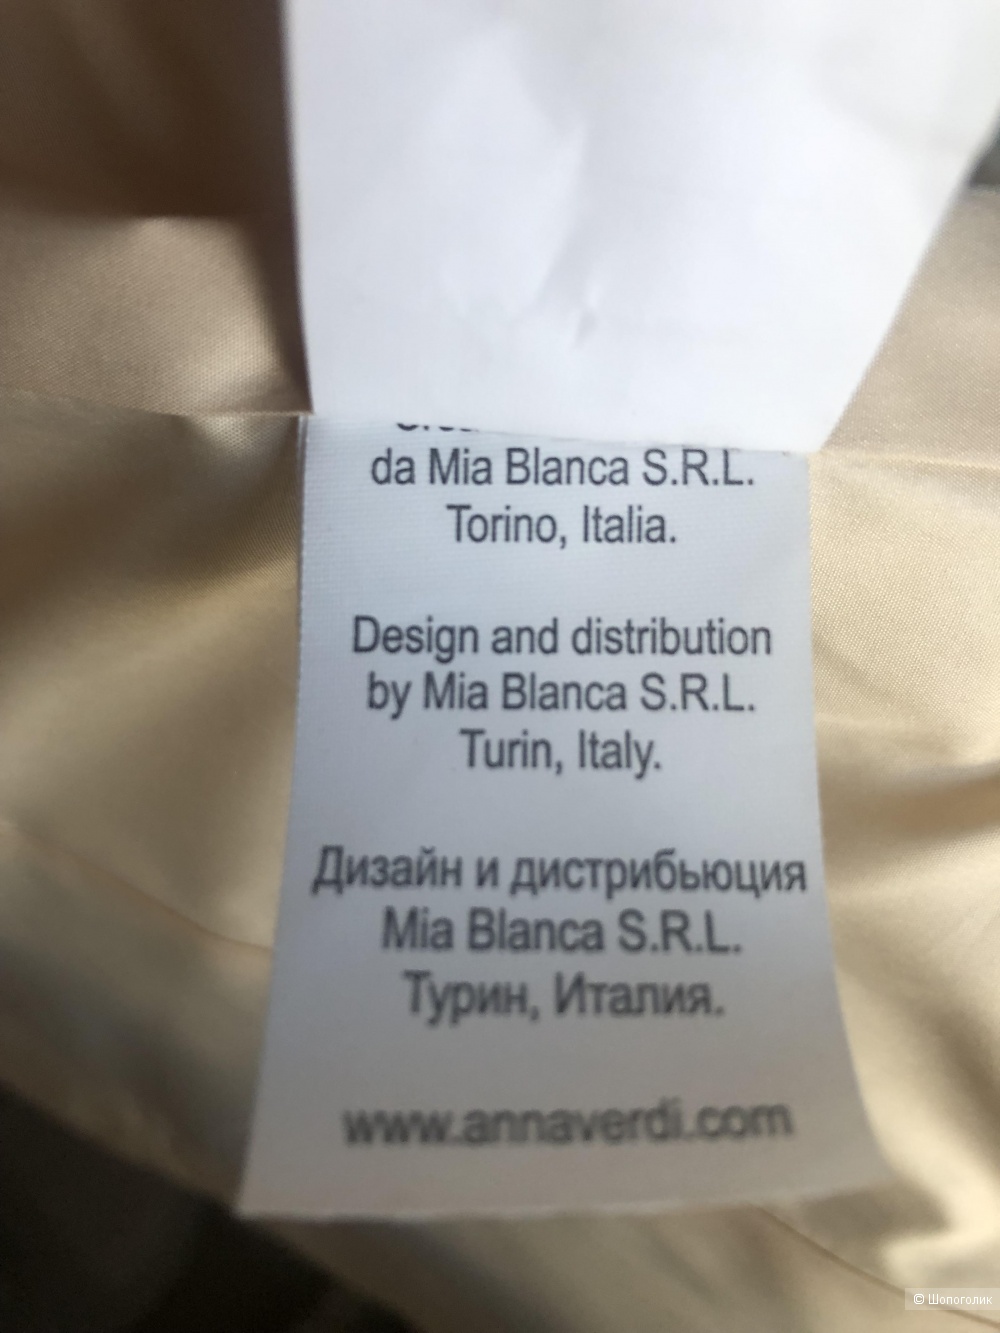 Куртка Anna Verdi, размер XS-S.